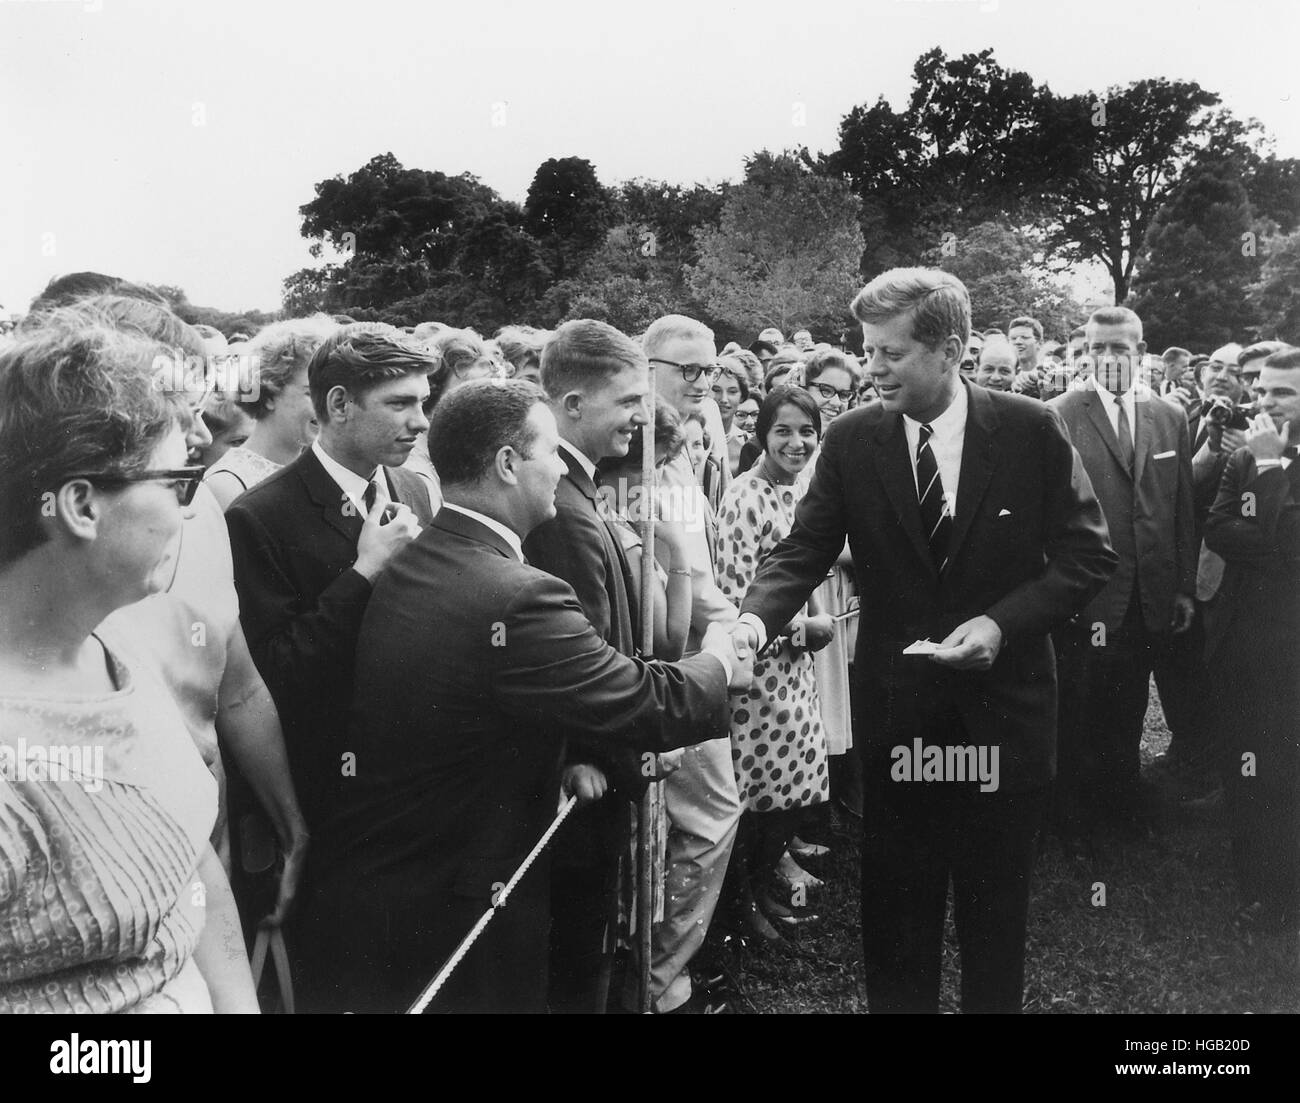 Präsident Kennedy grüßt Peace Corps Freiwilligen auf dem Rasen des weißen Hauses Süd. Stockfoto